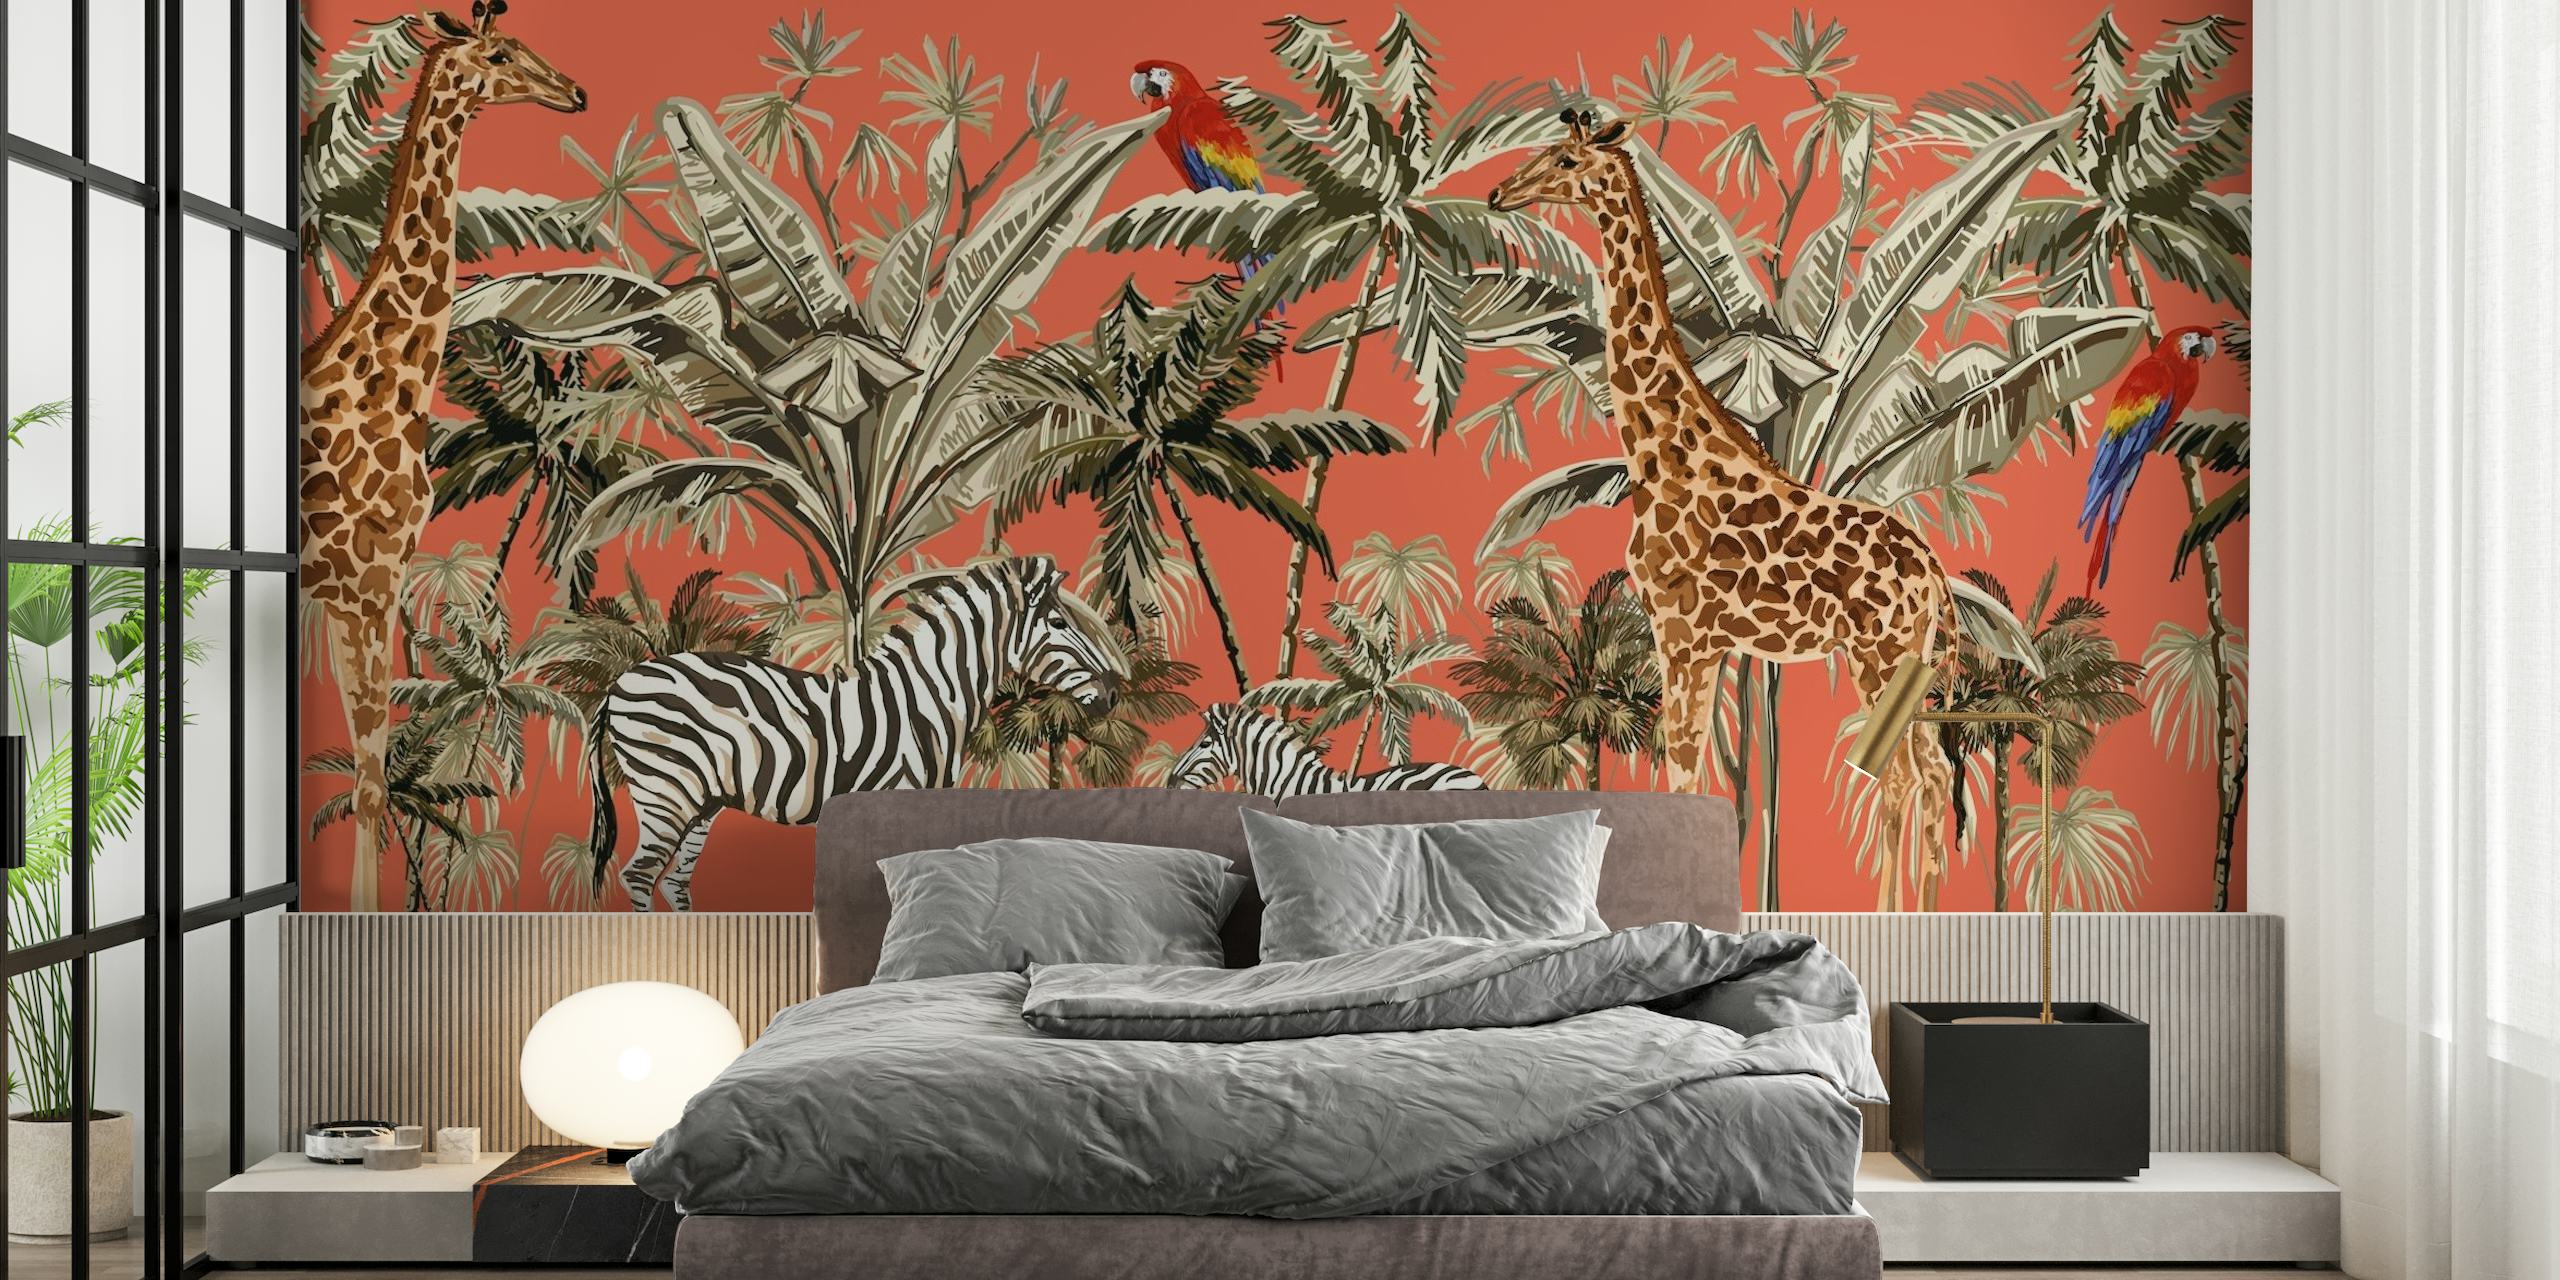 Safari-inspireret vægmaleri med zebraer, giraffer og fugle på en orange baggrund